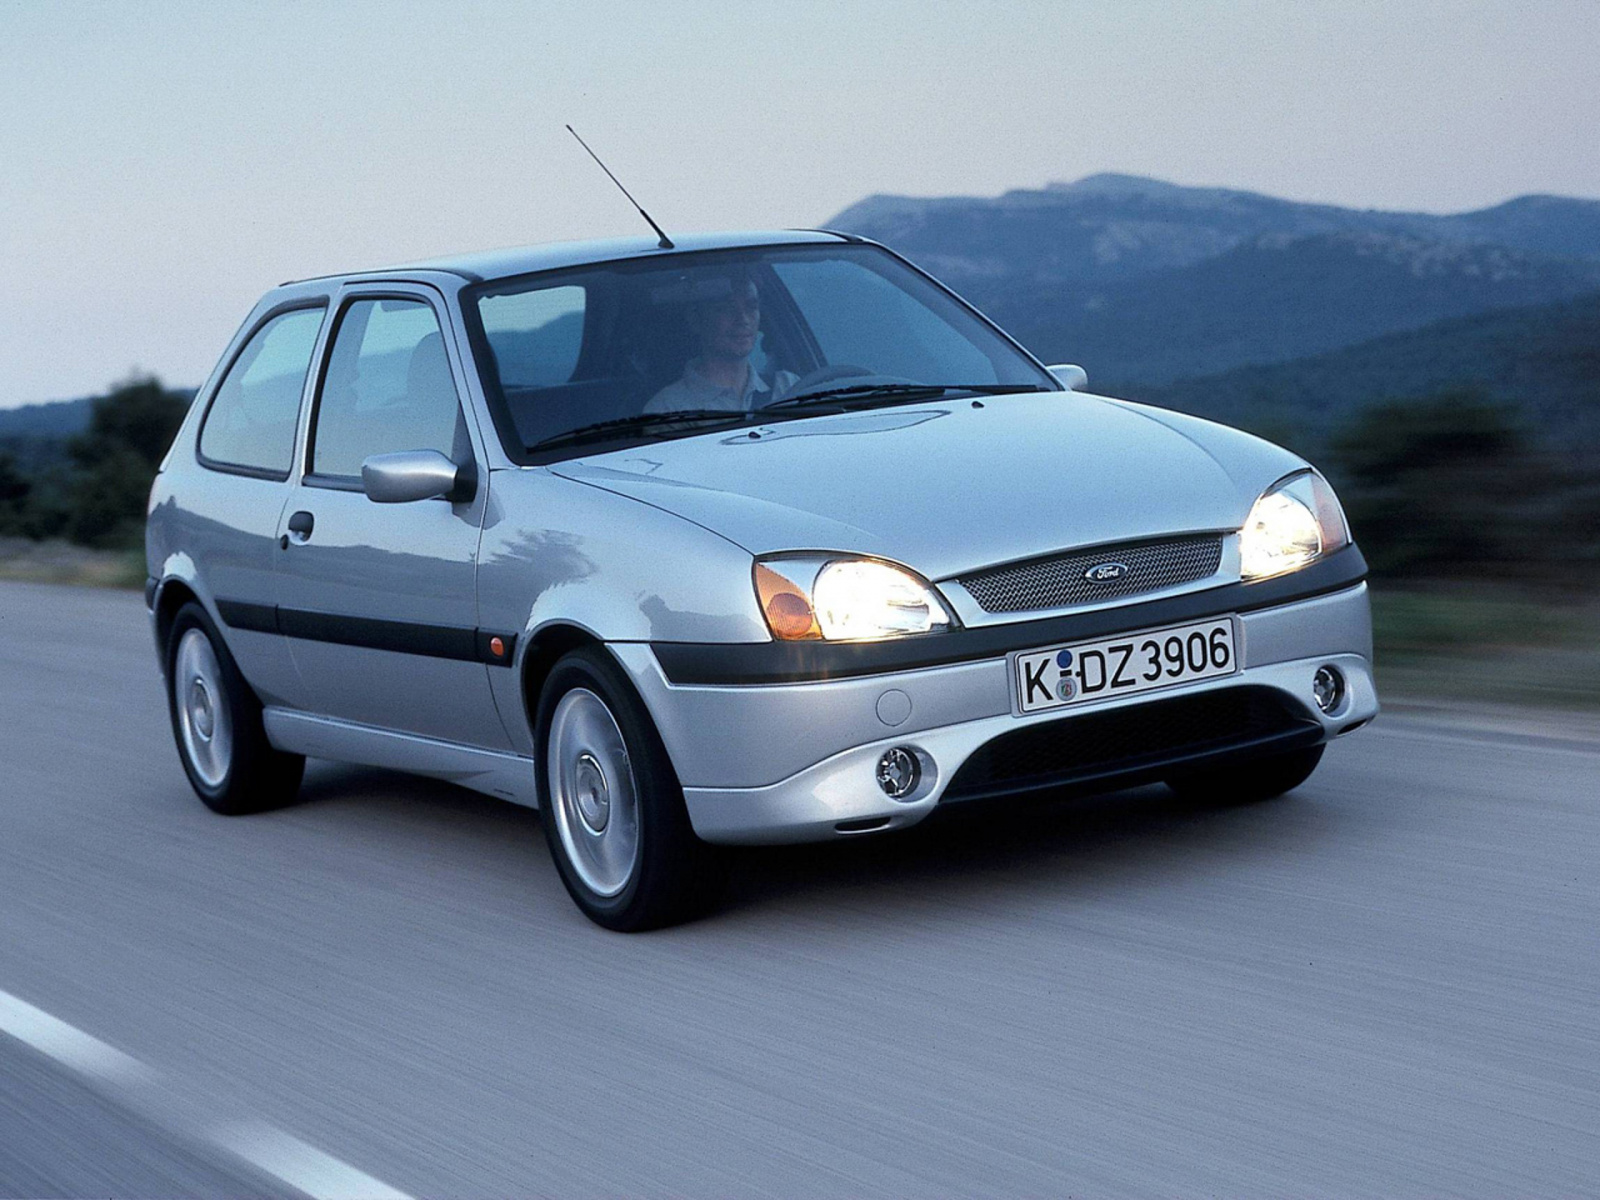 Ford Fiesta Sport (1999) - Foto eines Ford PKW-Modells